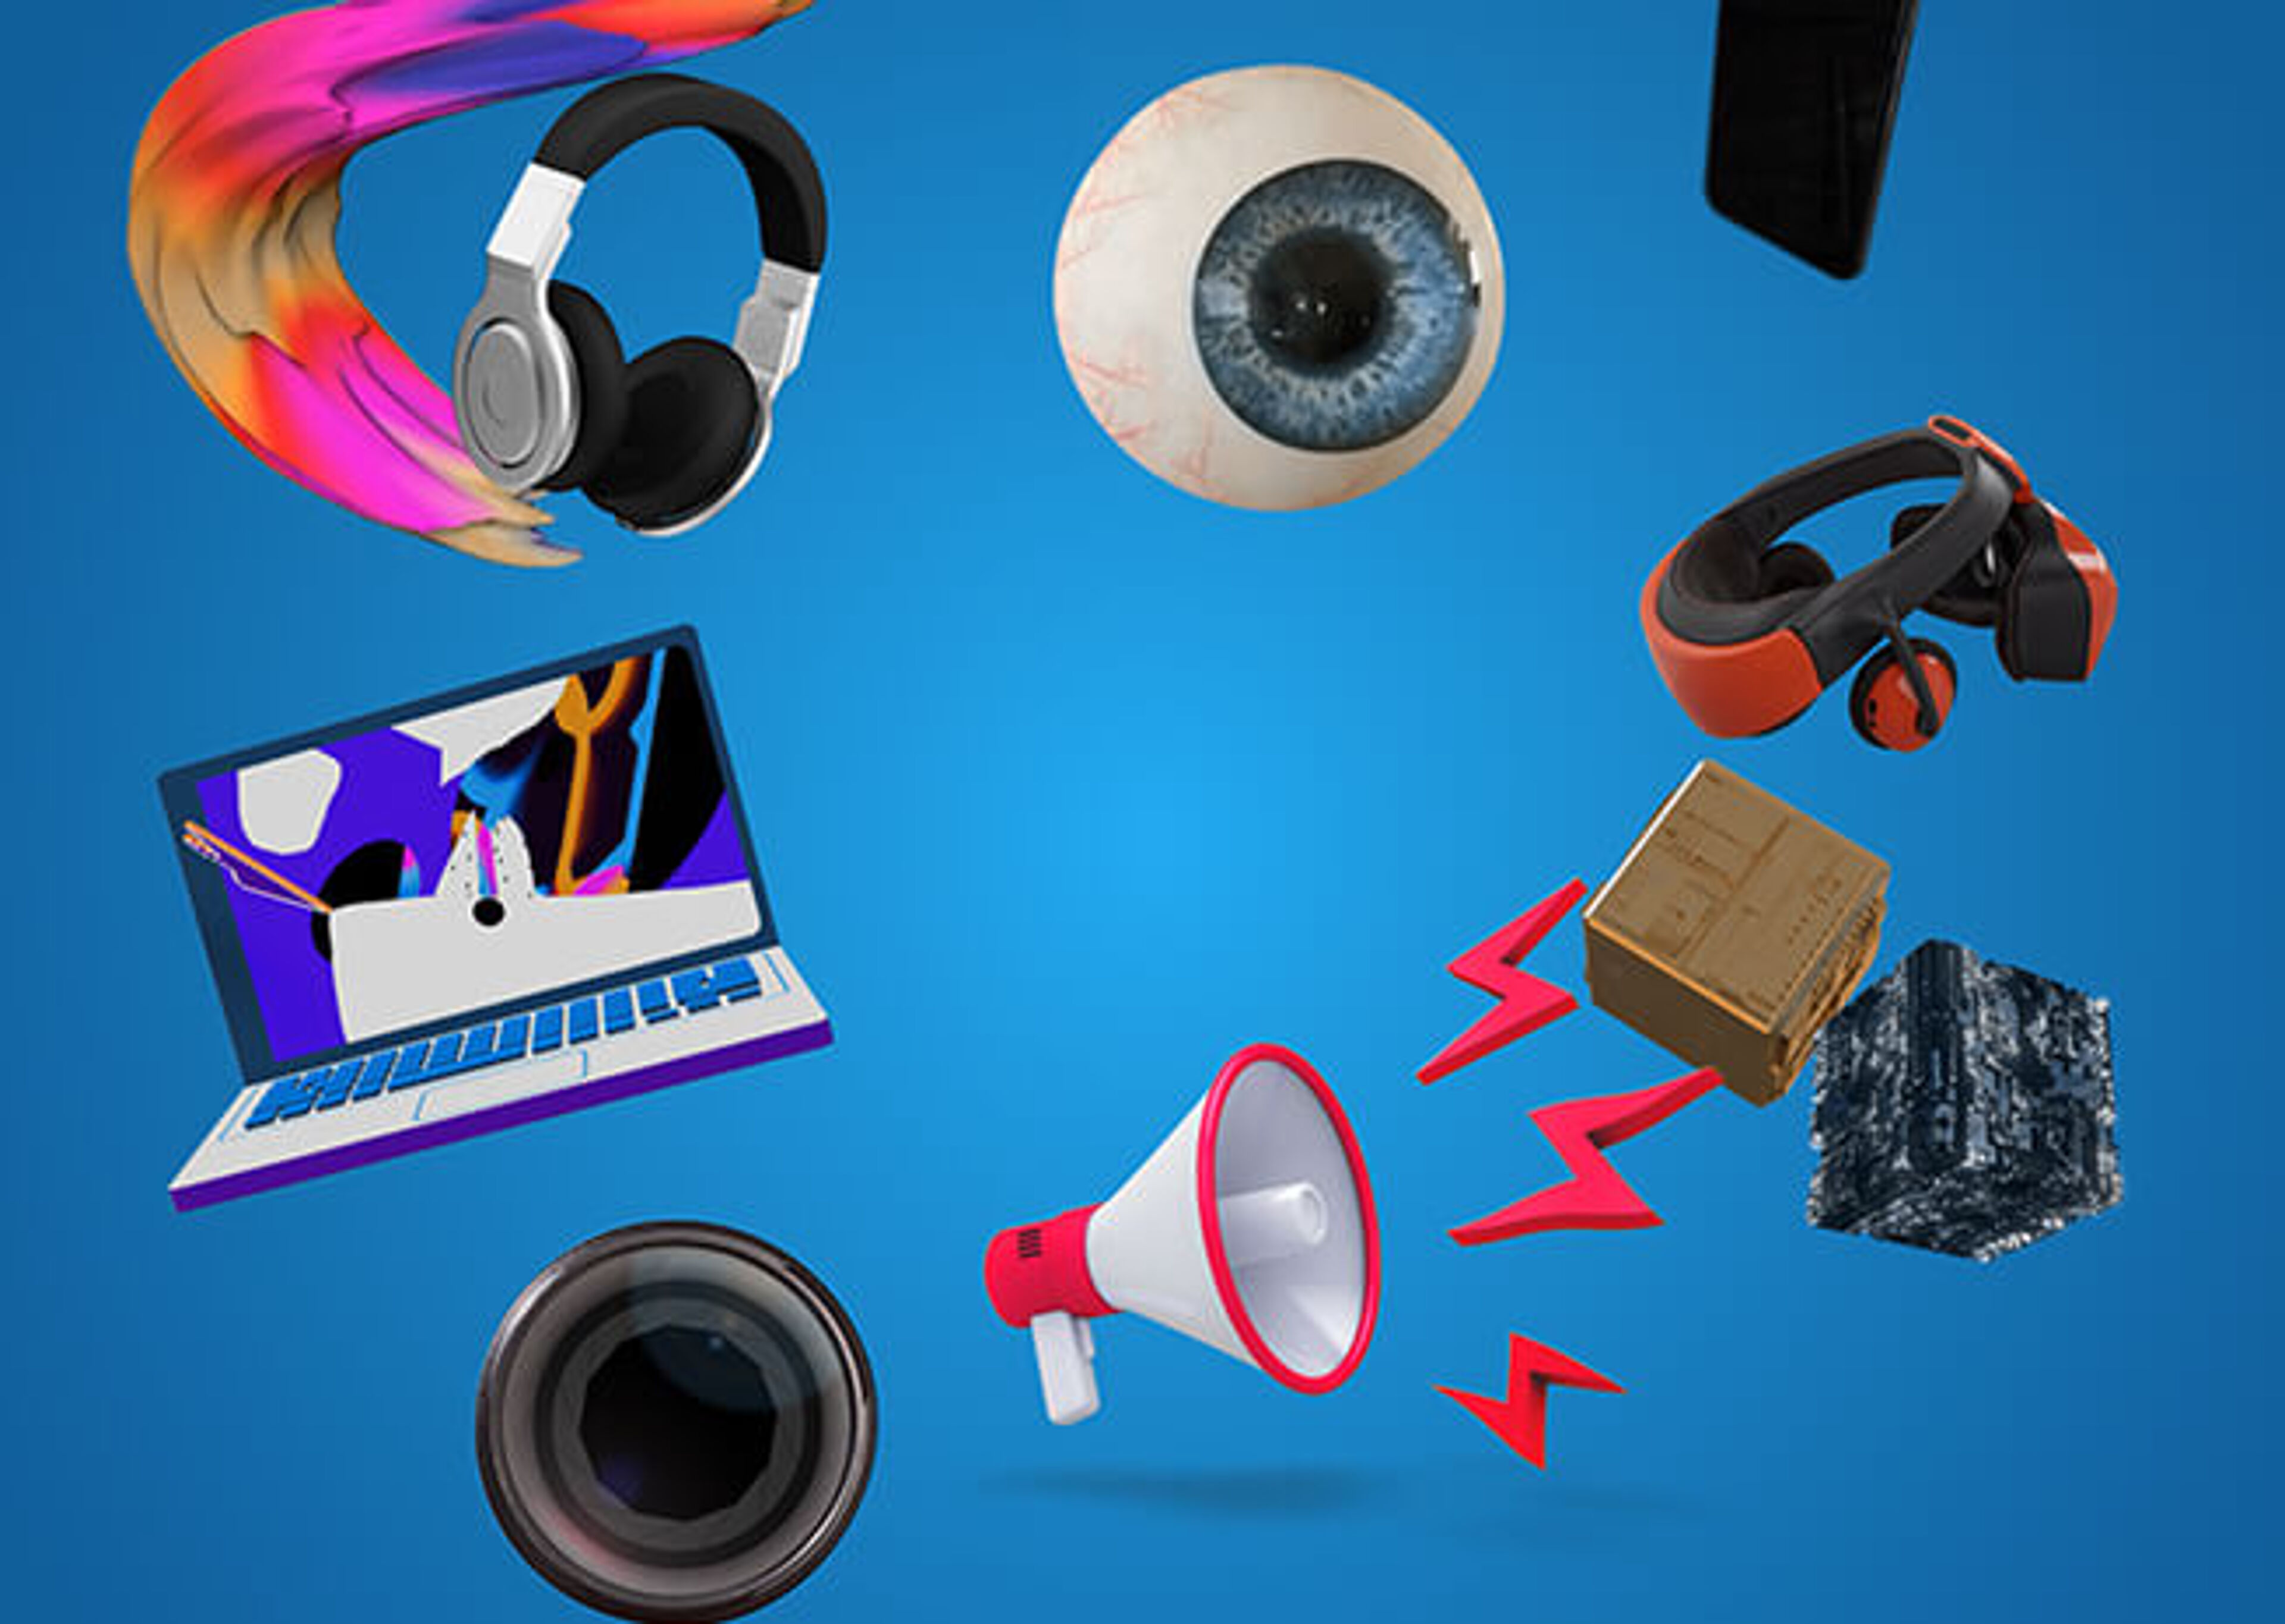 Un collage digital de objetos multimedia que incluye audífonos, un ojo, auriculares VR, portátil, megáfono, lente de cámara y un altavoz, con fondo azul.